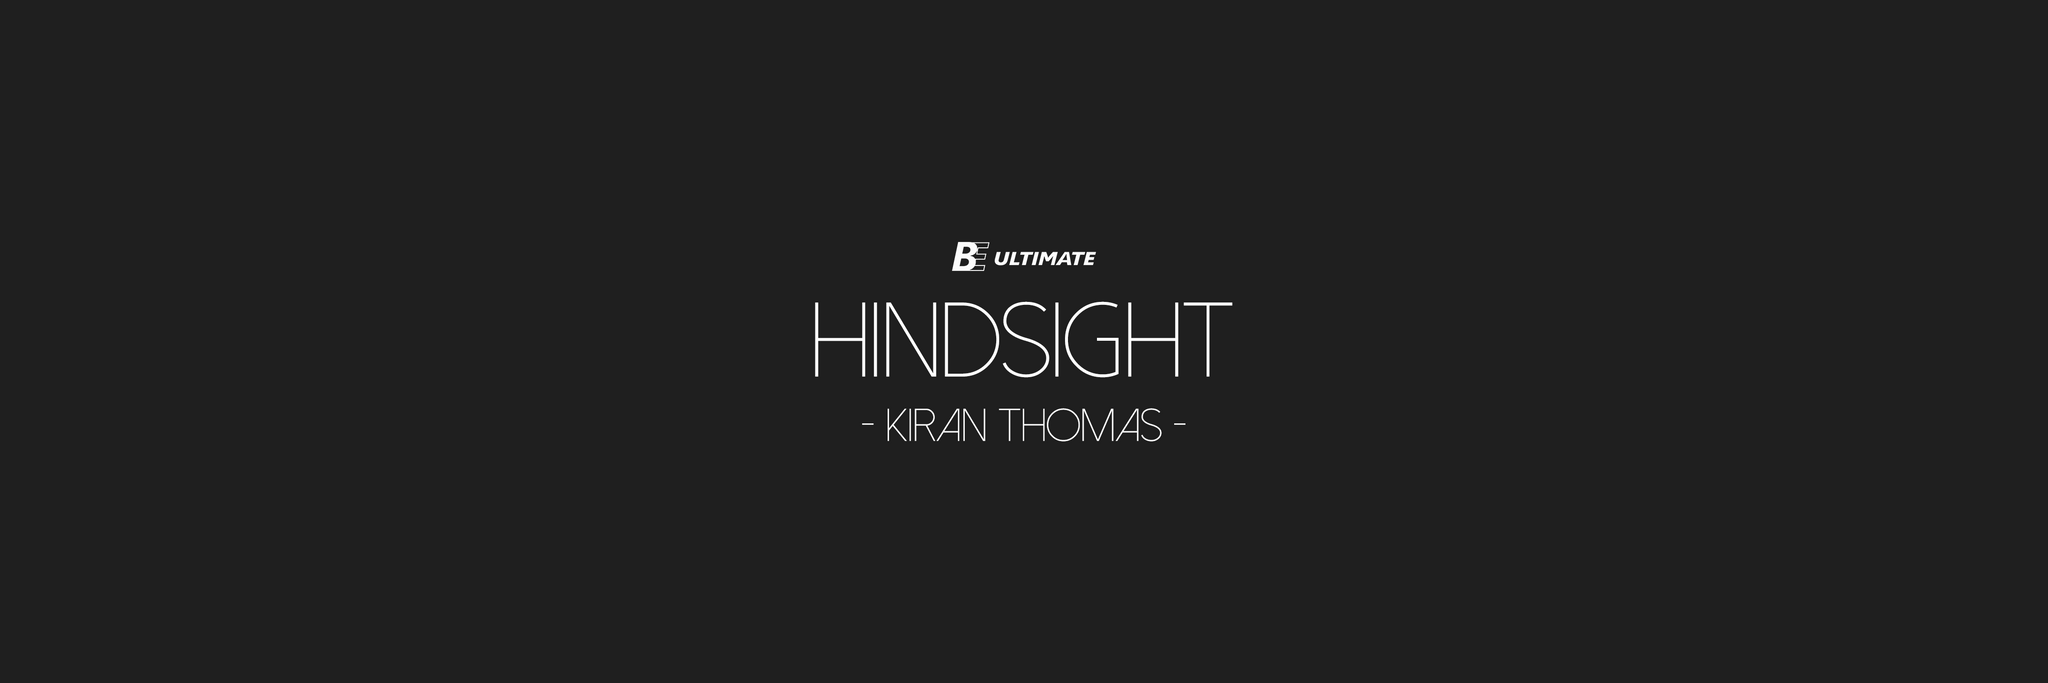 Hindsight: Kiran Thomas